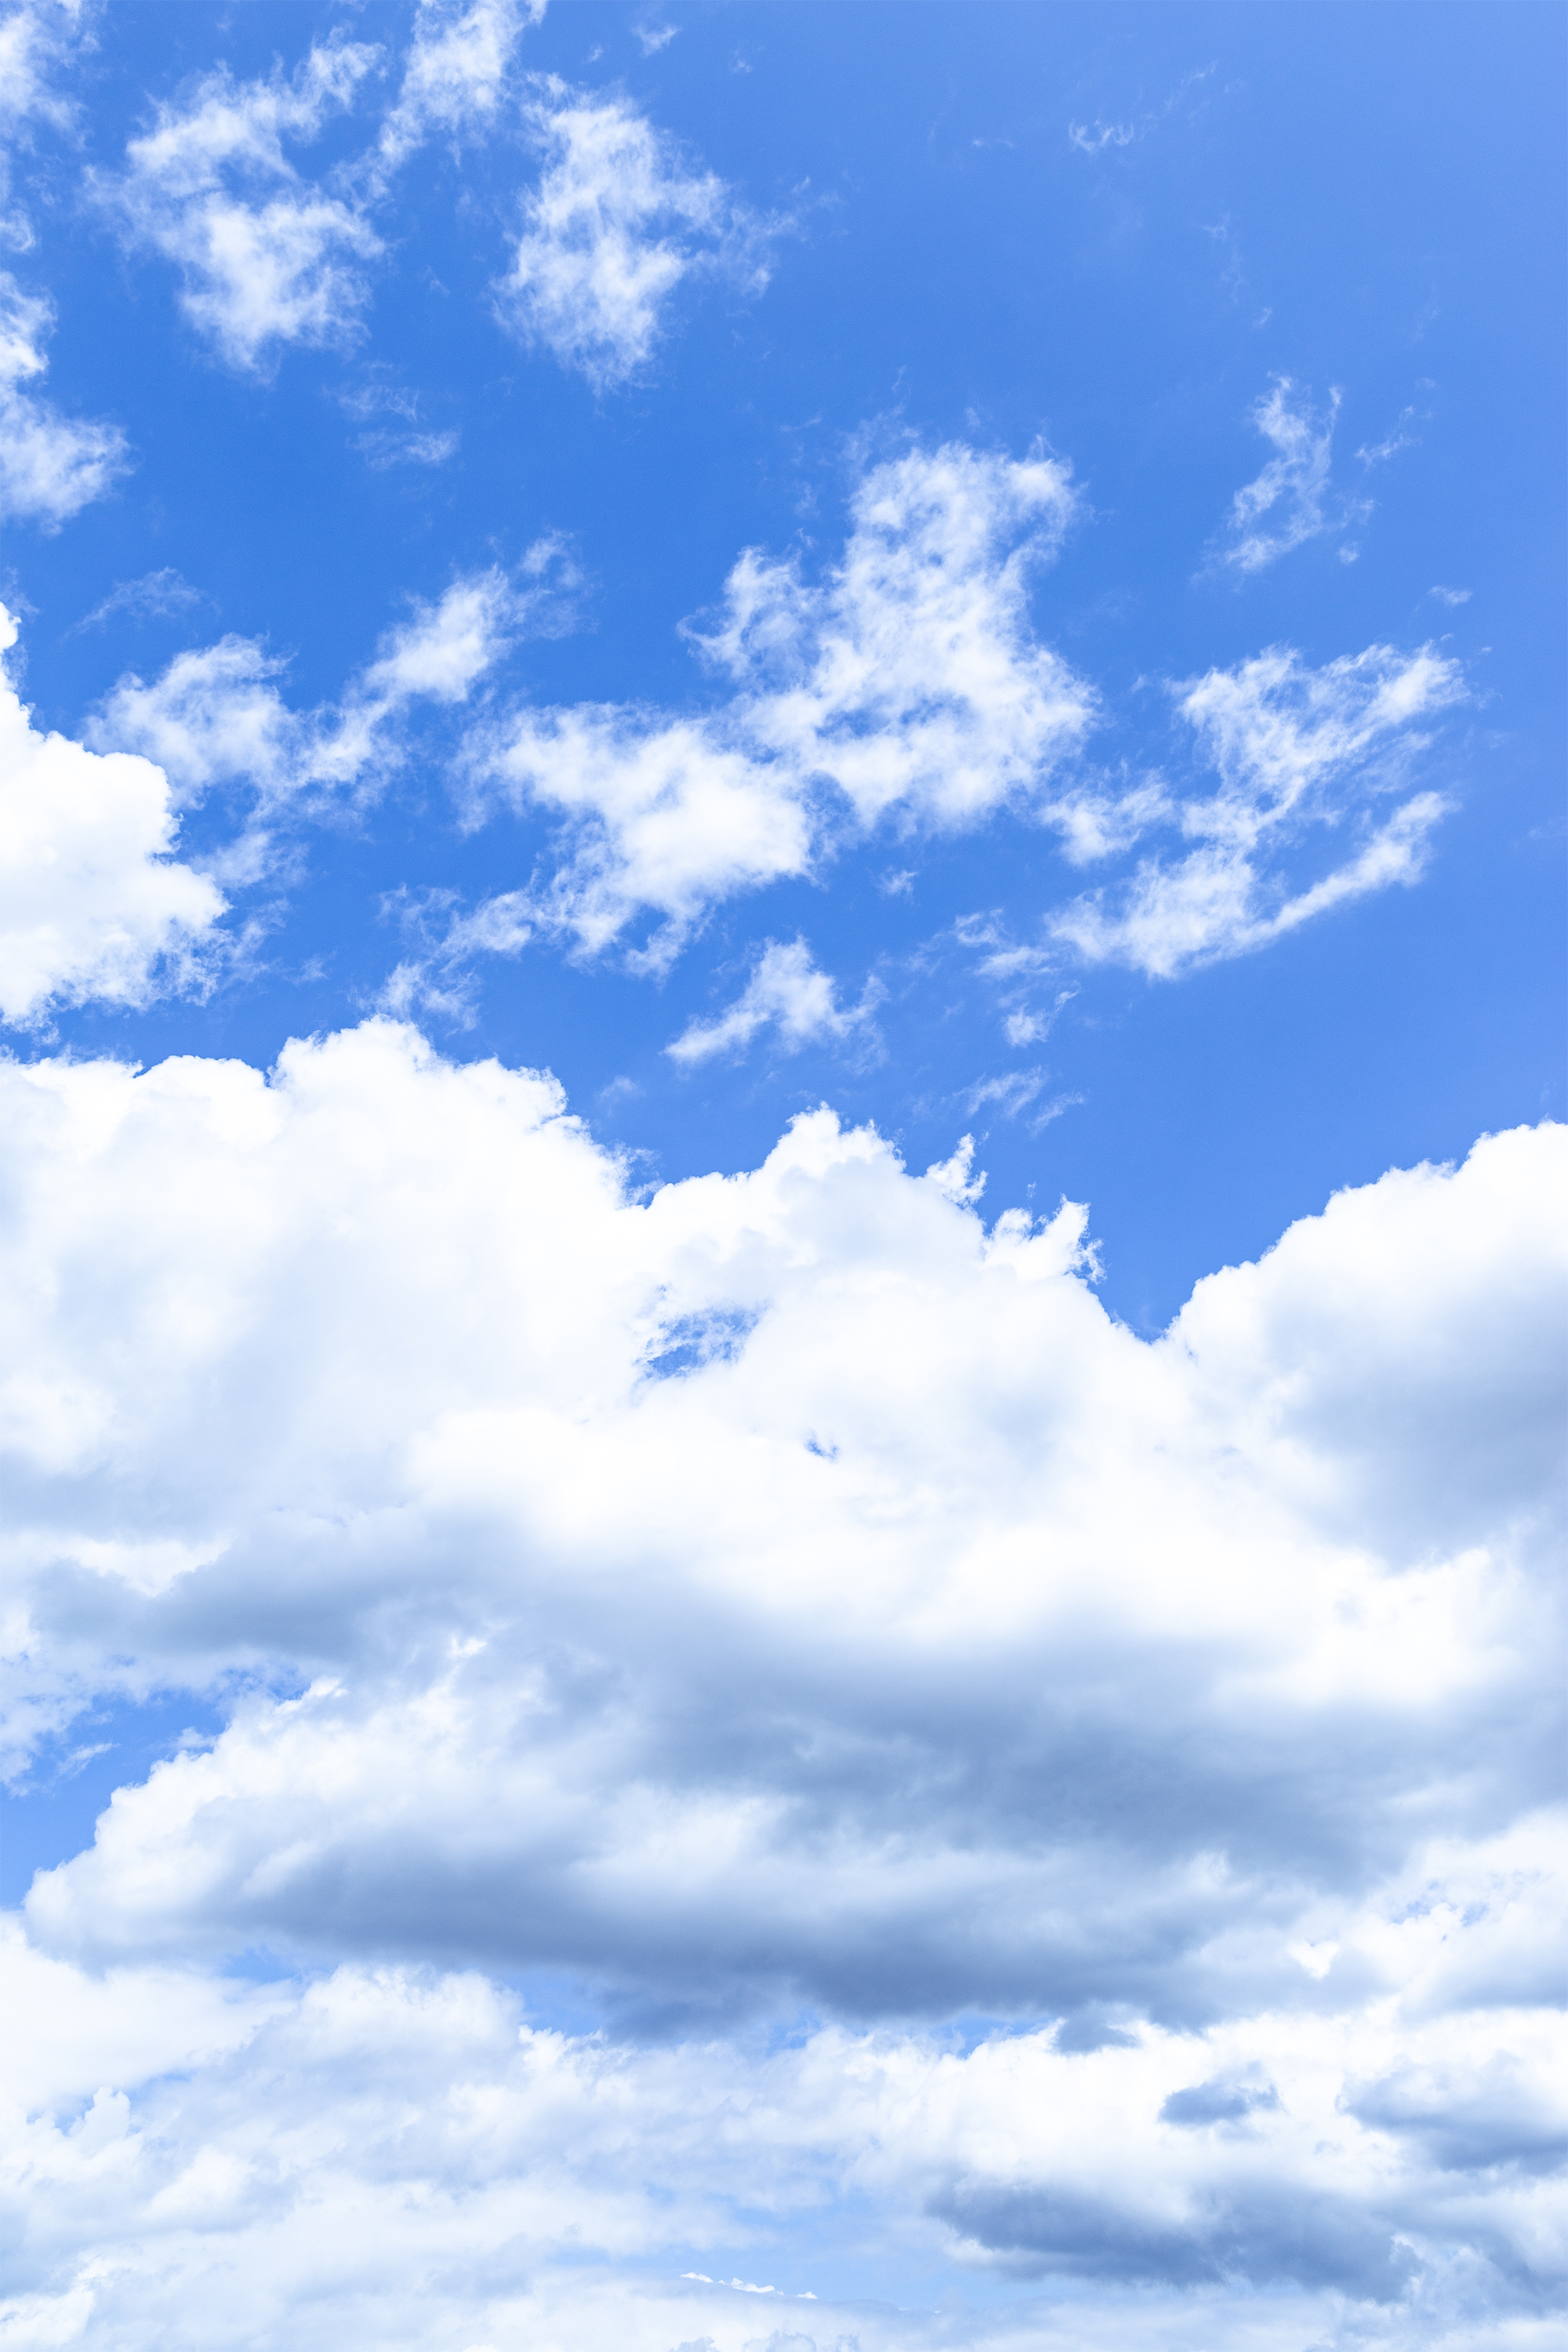 空と雲03 無料の高画質フリー写真素材 イメージズラボ